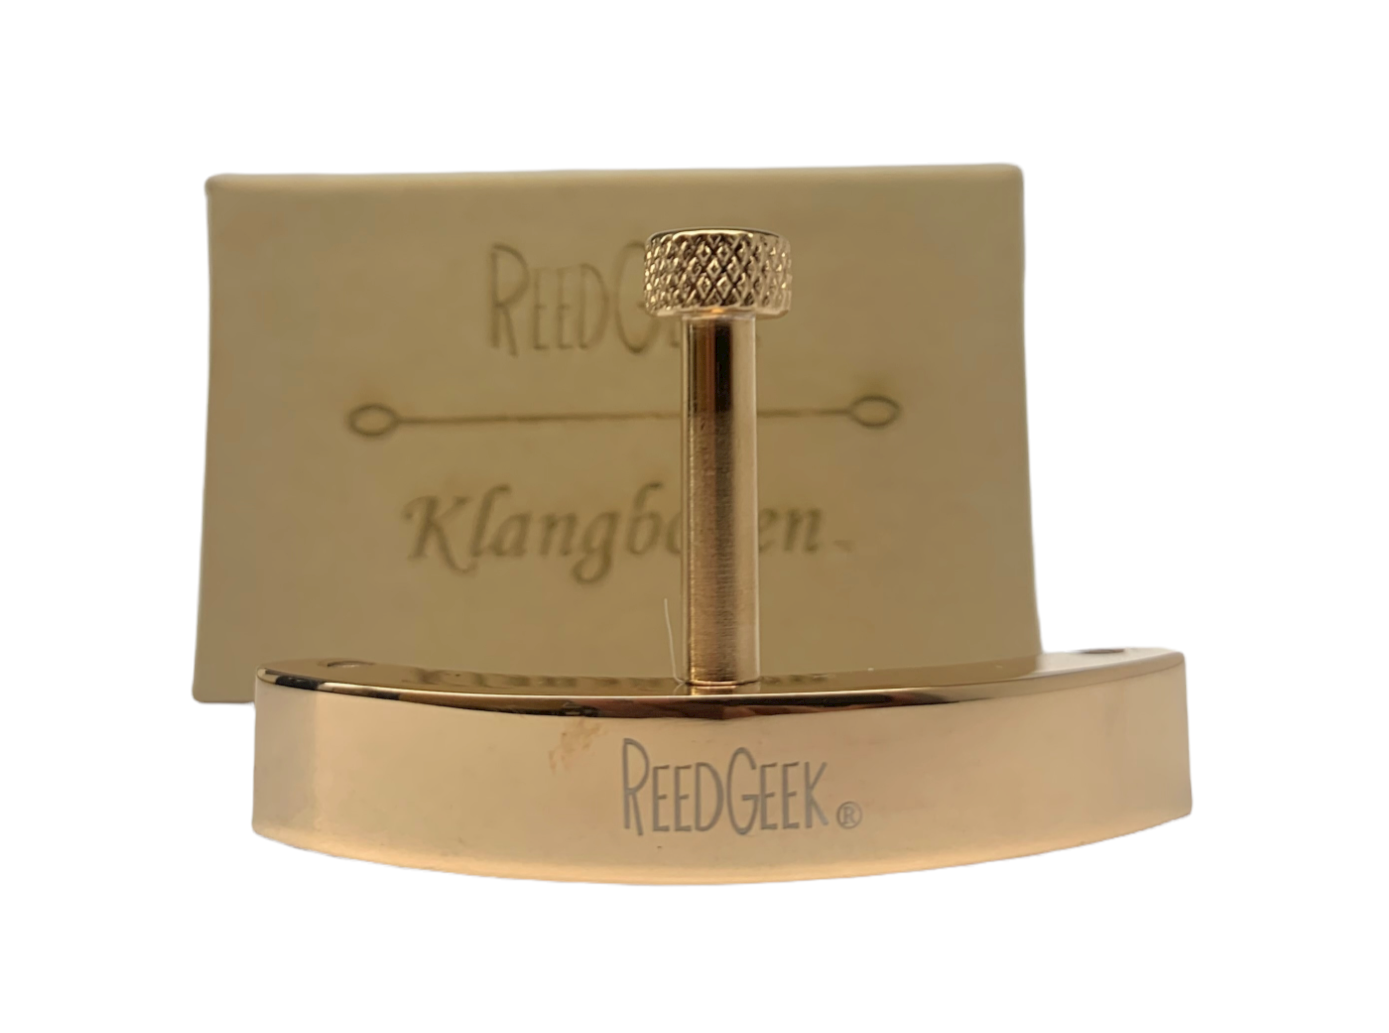 ReedGeek Saxophone Klangbogens - Three Pin Lyre Sets - Premium reedgeek from REEDGEEK - Just $84.95! Shop now at Poppa's Music